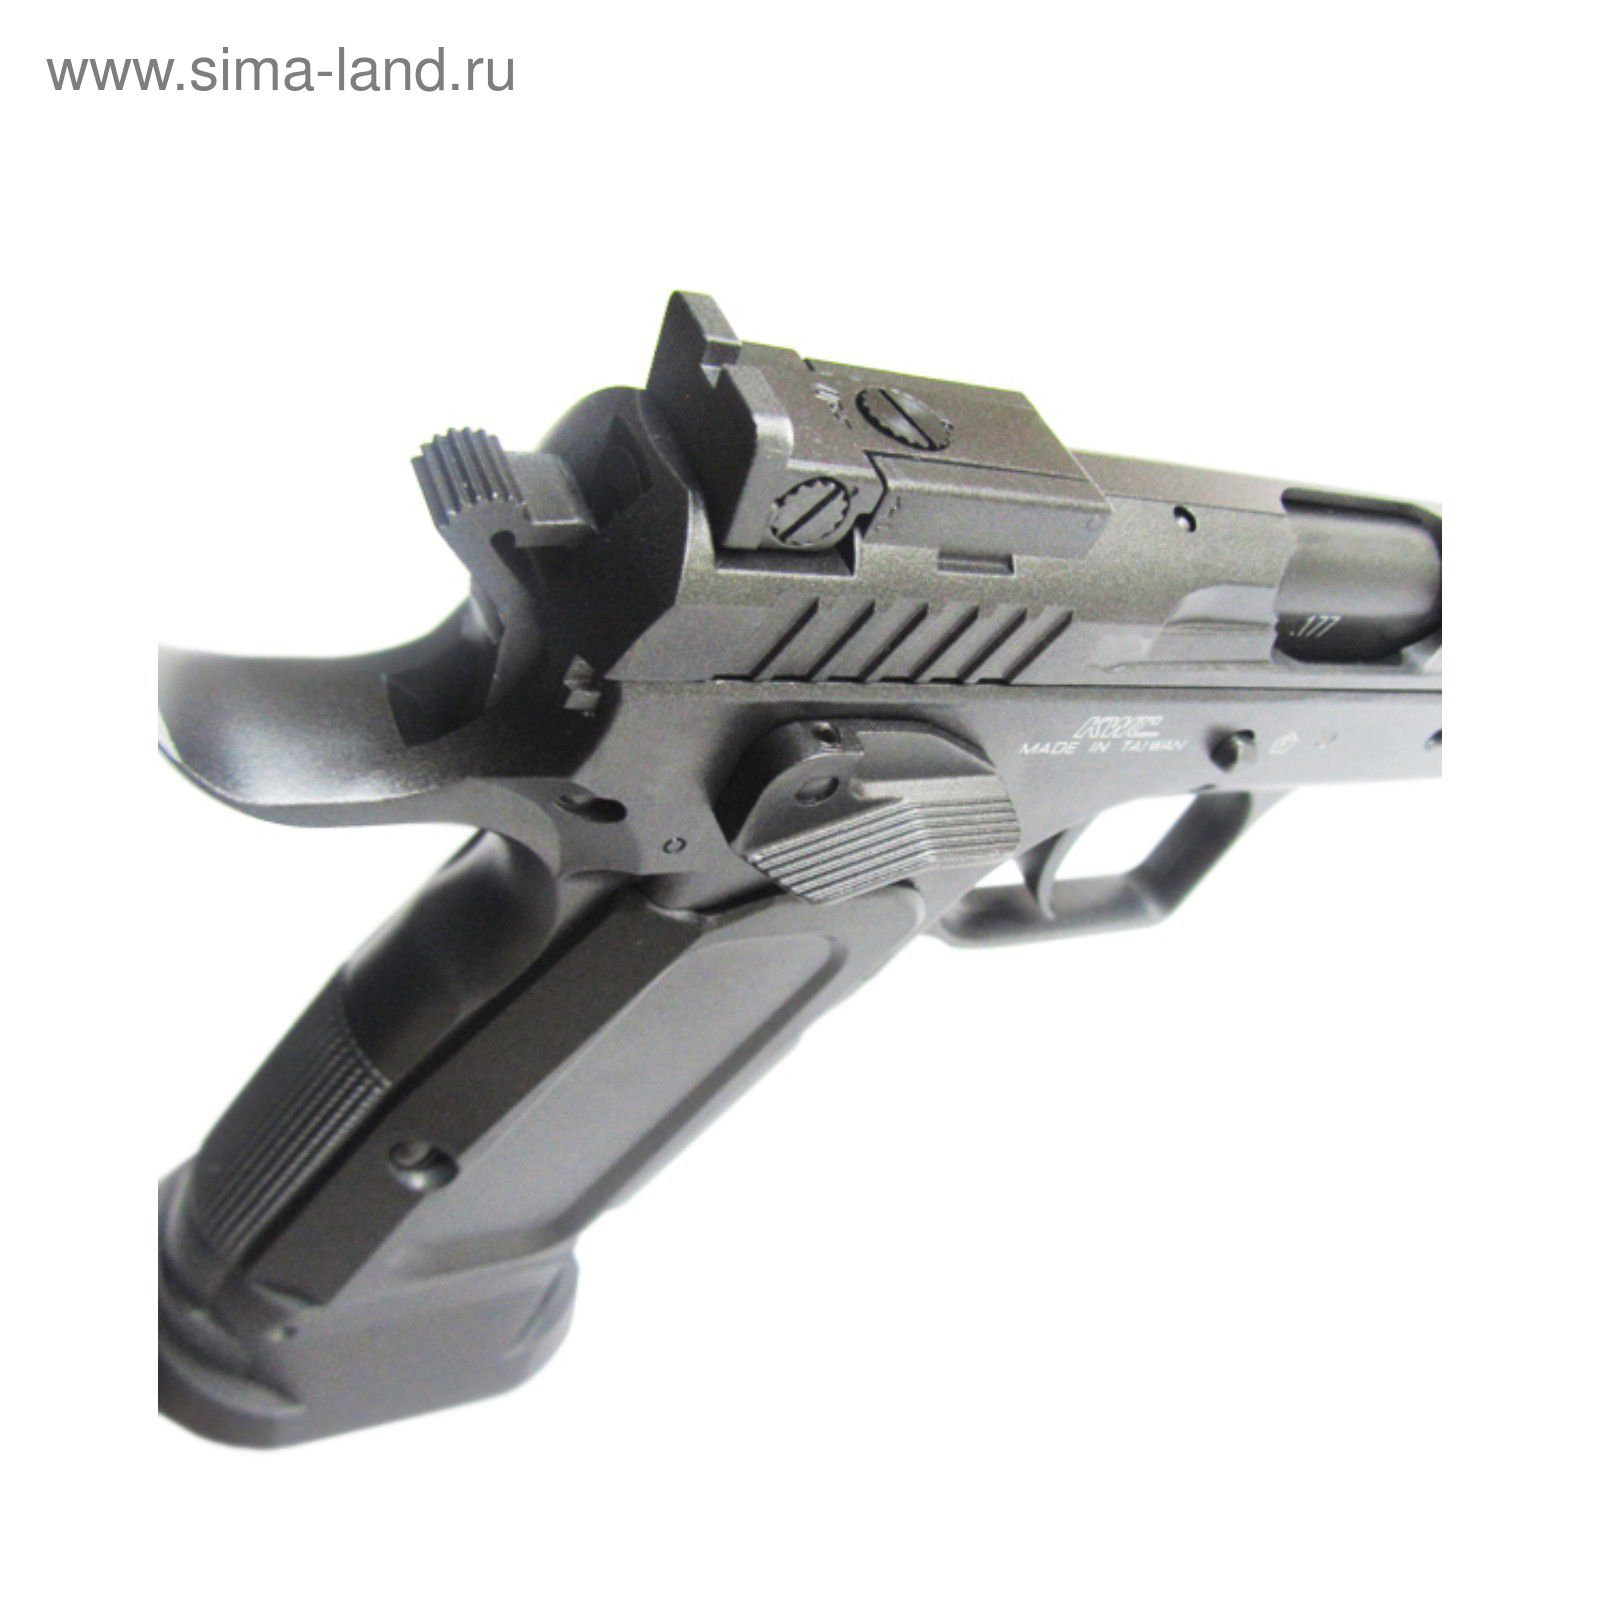 Пистолет пневматический Tanfoglio Limited Custom, к.4,5 мм, металл, блоубэк, черный, 91 м/с   246857